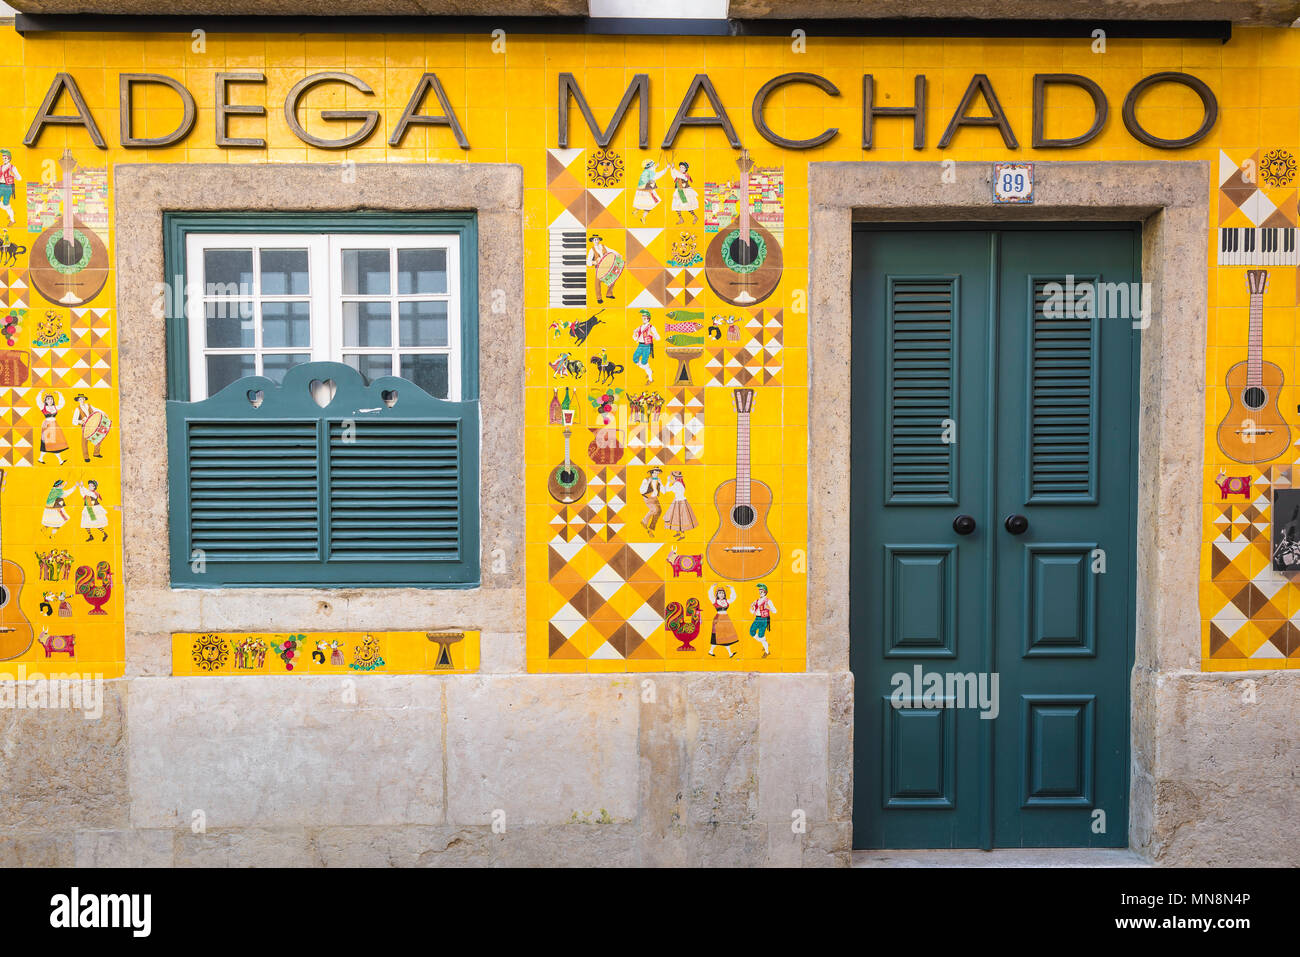 Fado Lisbon, vue sur la façade en carreaux de couleur de l'Adega Machado, un célèbre bar de fado dans le quartier Bairro Alto de Lisbonne, Portugal. Banque D'Images